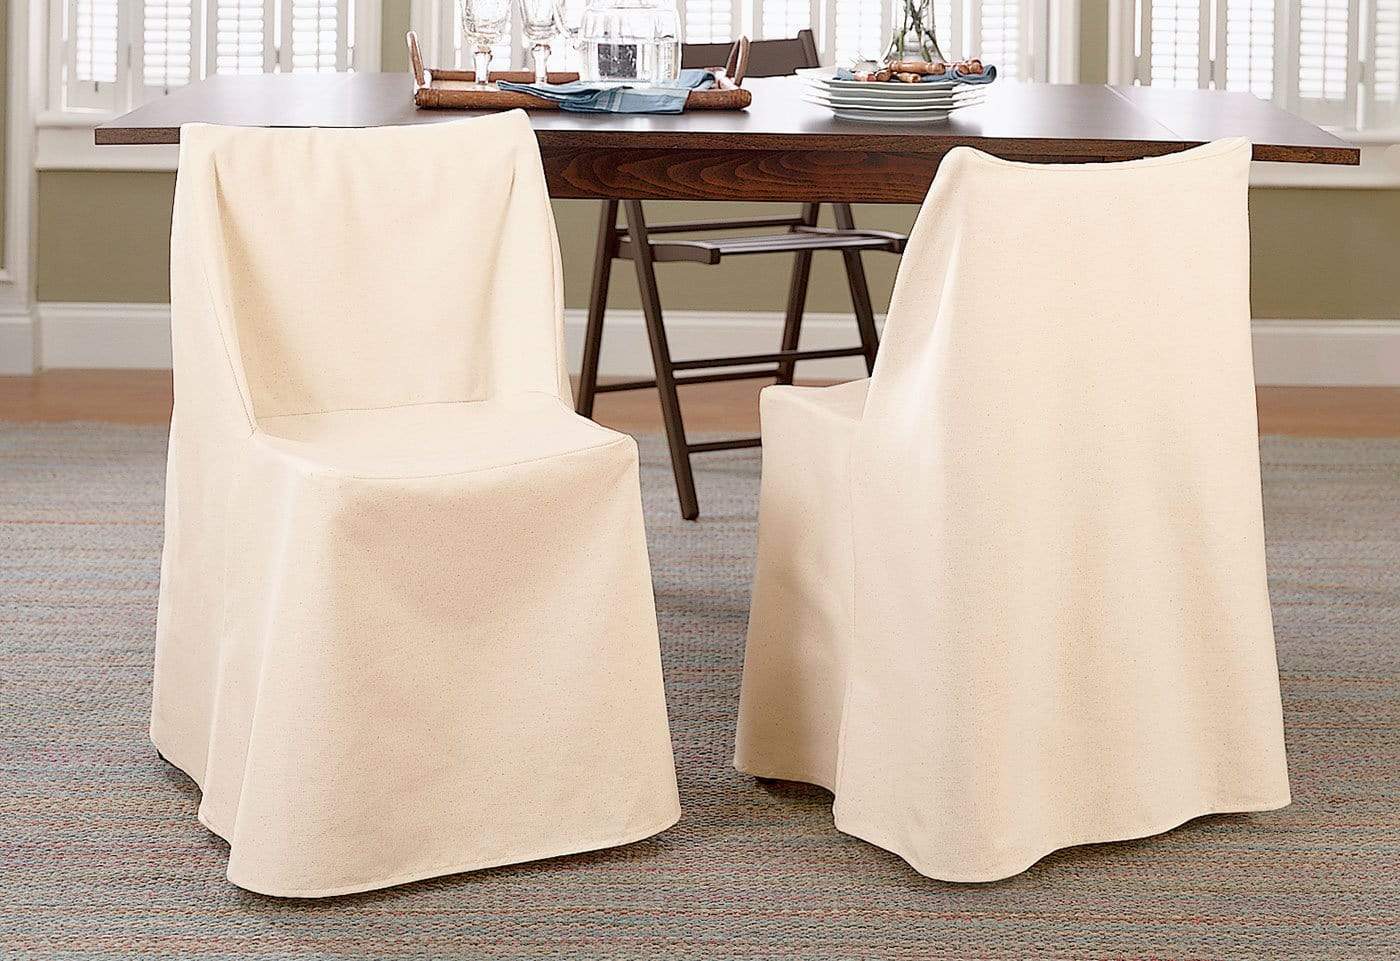 Photos - Furniture Cover SureFit Cotton Duck Folding Chair Slipcover | 100 Cotton | Machine Washabl